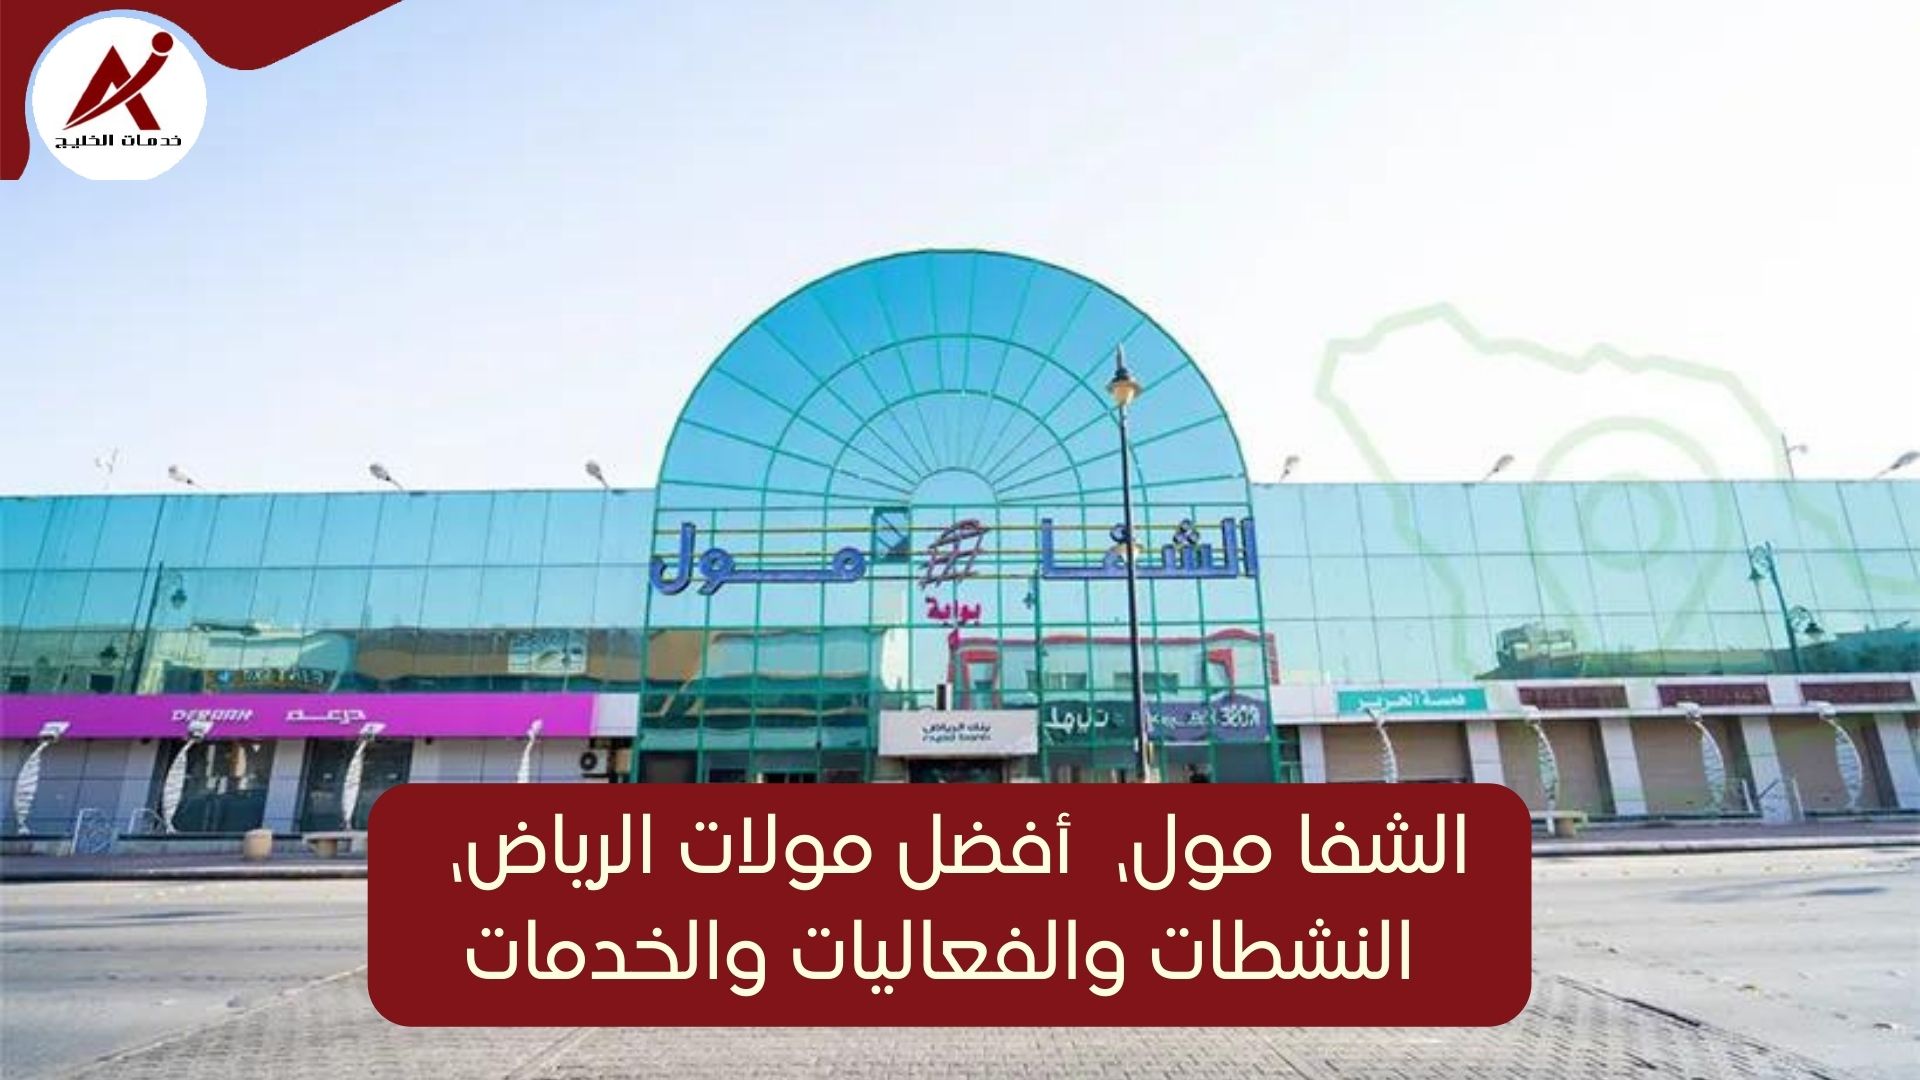 الشفا مول، أفضل مولات الرياض، المحلات والخدمات في الشفا مول